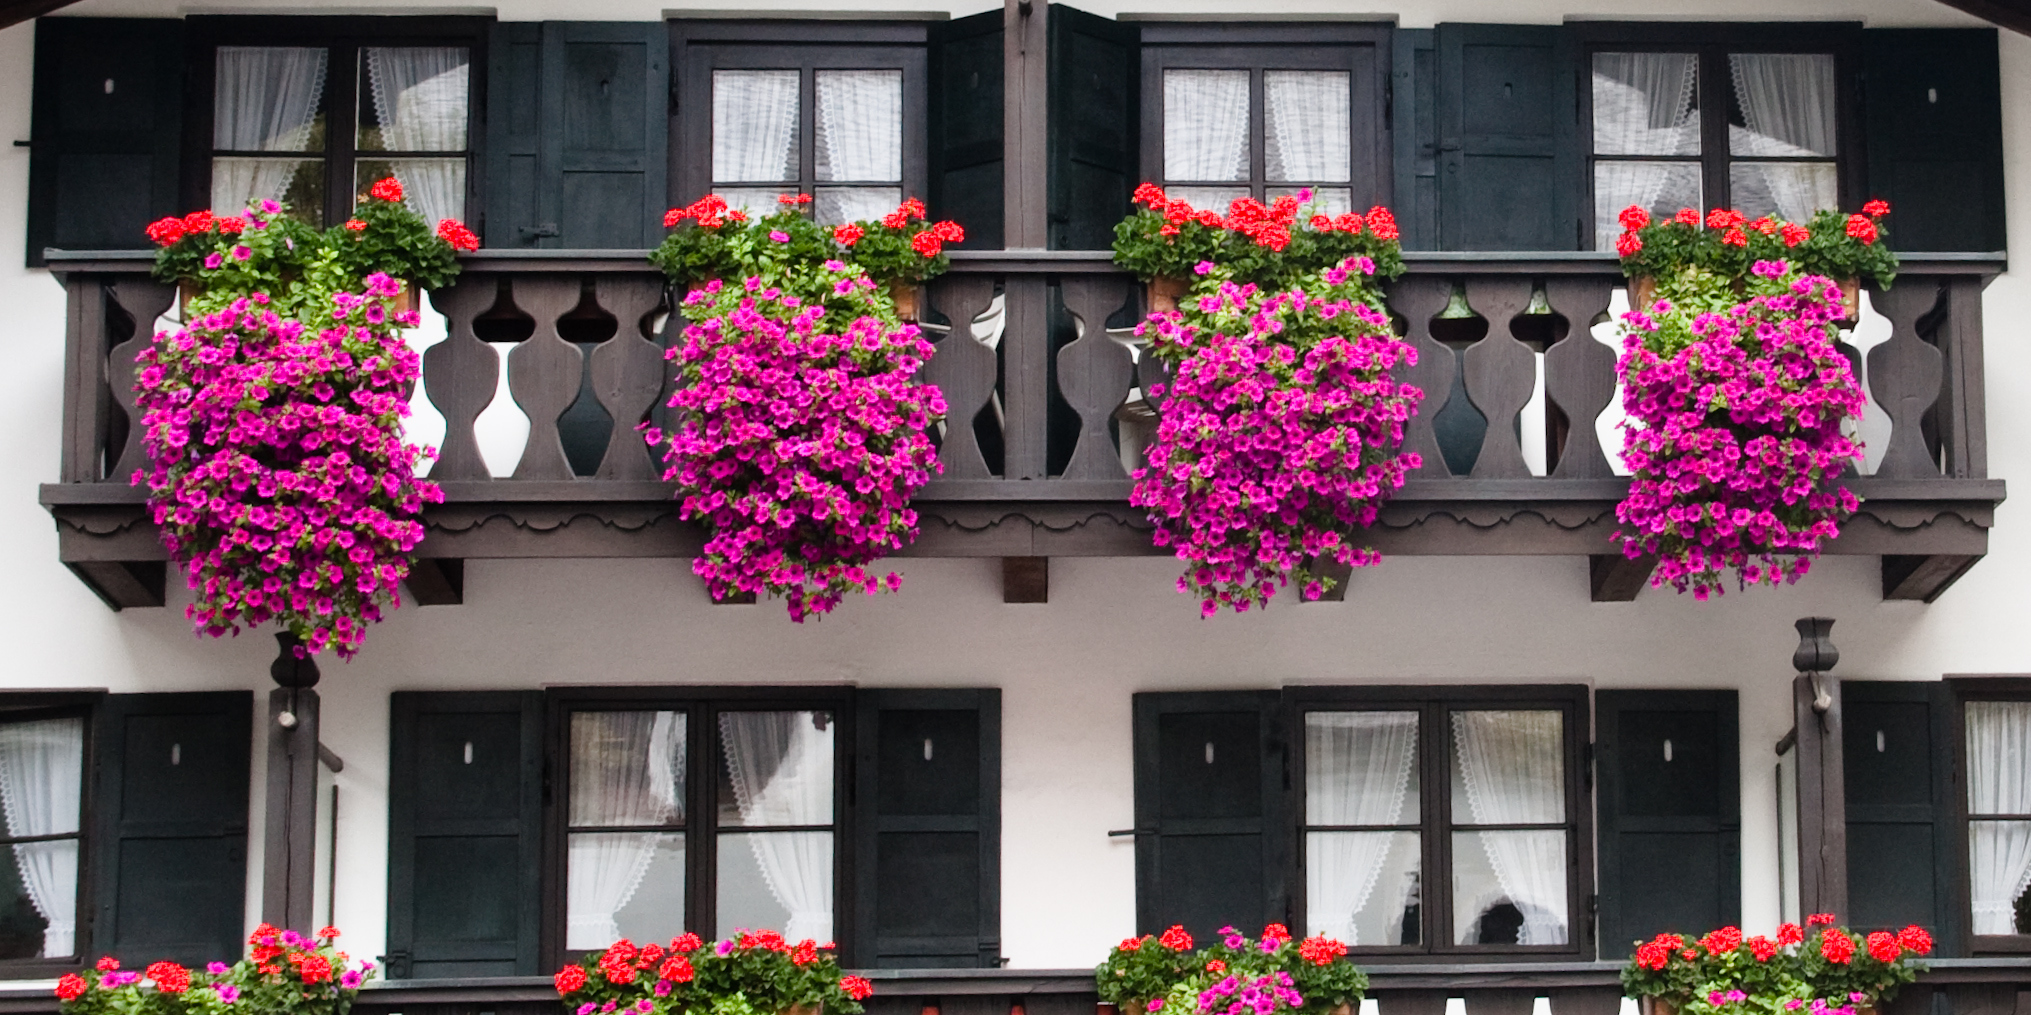 Fassade mit Balkonfront im Bauernhausstil mit roten und violleten Balkonblumen.